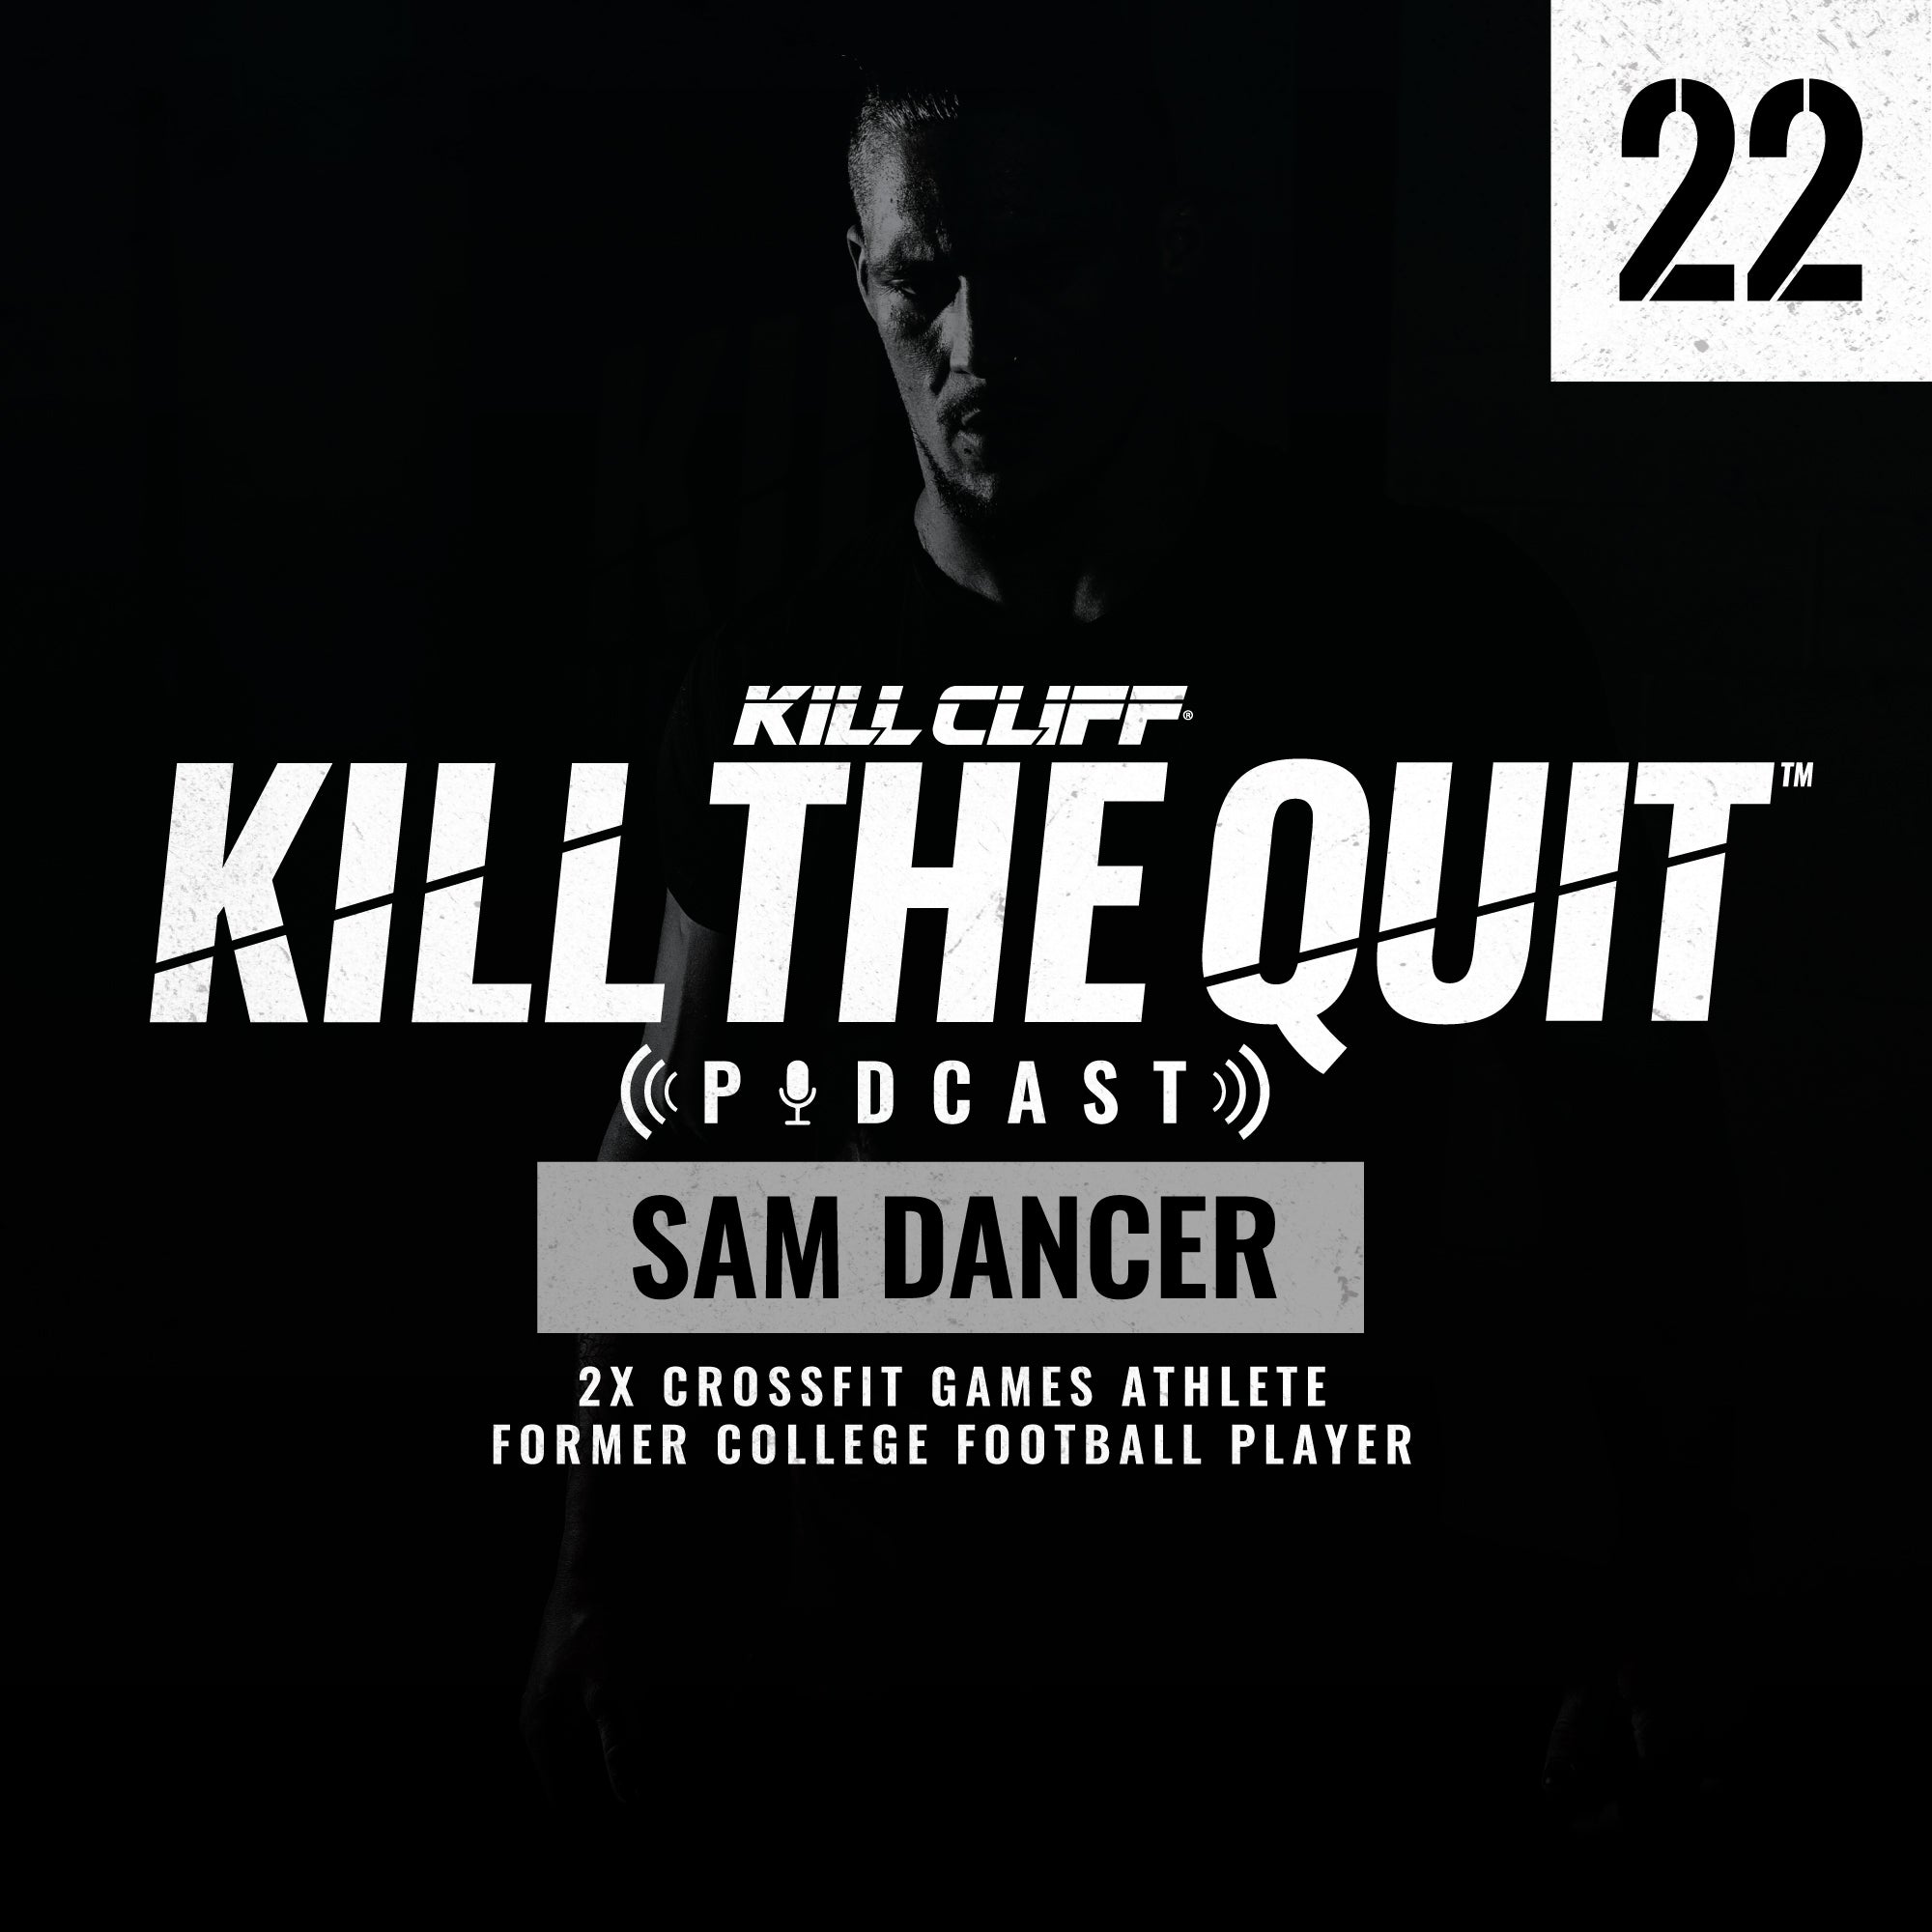 PODCAST Ep. 022 - Sam Dancer - Kill Cliff